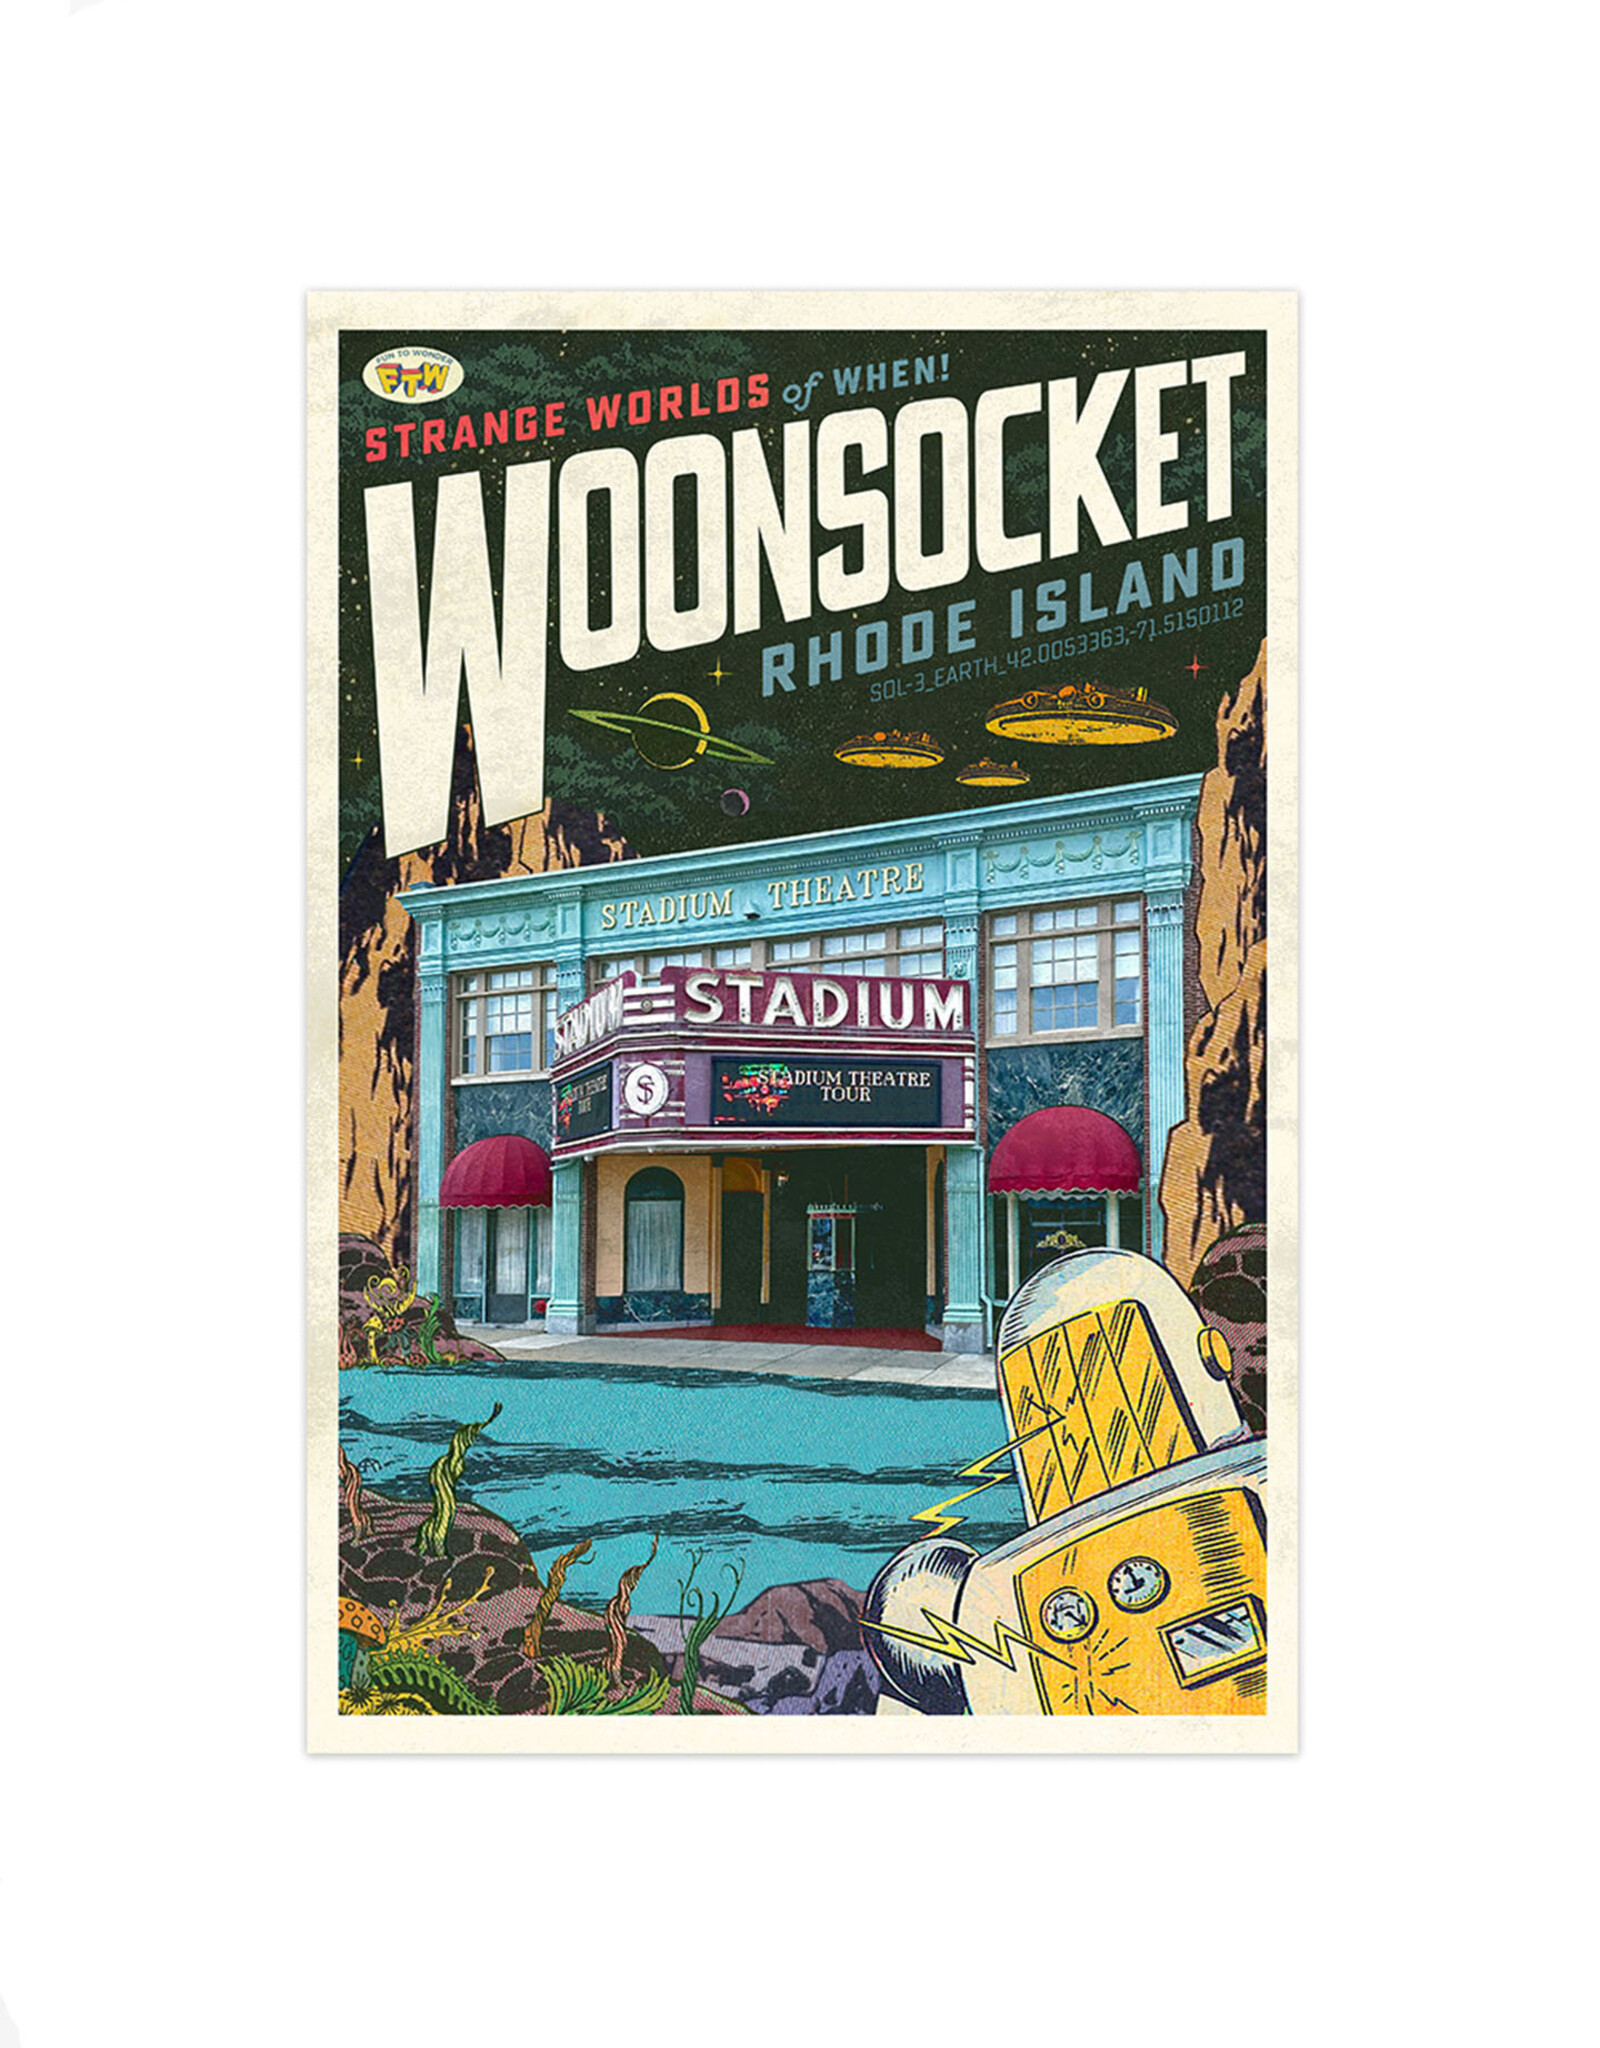 Strange Worlds of When! Postcard - Stadium Theatre